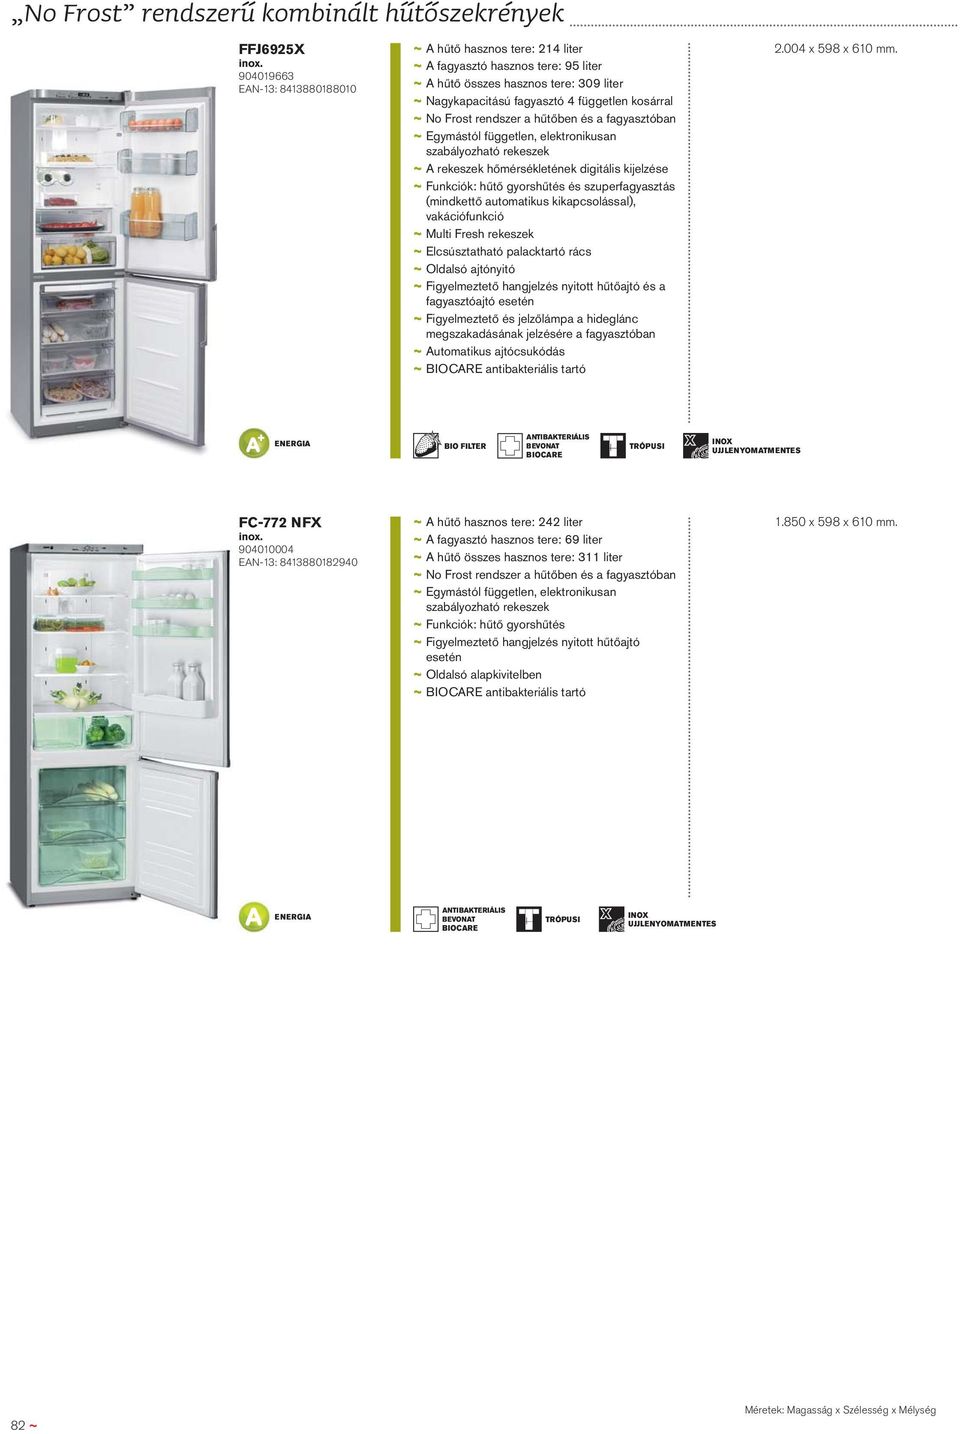 Frost rendszer a hűtőben és a fagyasztóban ~ Egymástól független, elektronikusan szabályozható rekeszek ~ A rekeszek hőmérsékletének digitális kijelzése ~ Funkciók: hűtő gyorshűtés és